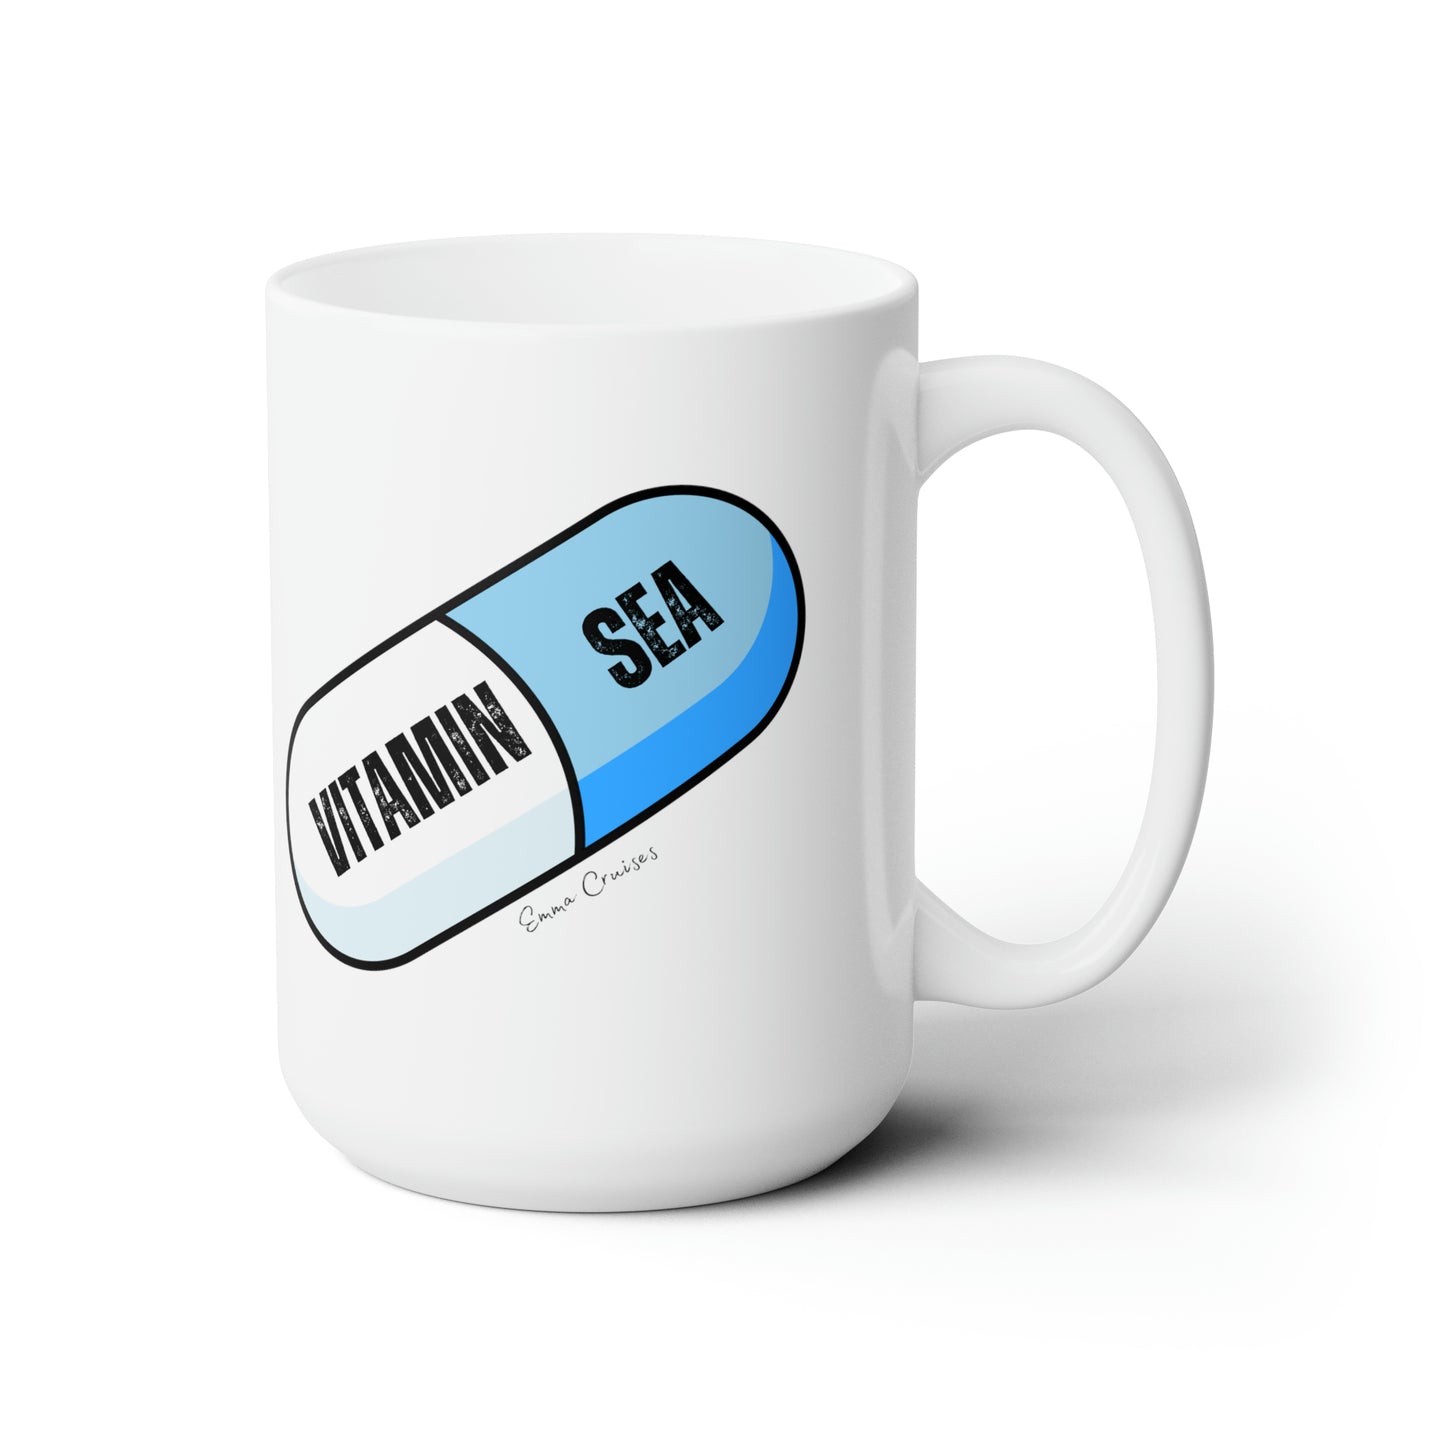 Vitamin Sea - Ceramic Mug